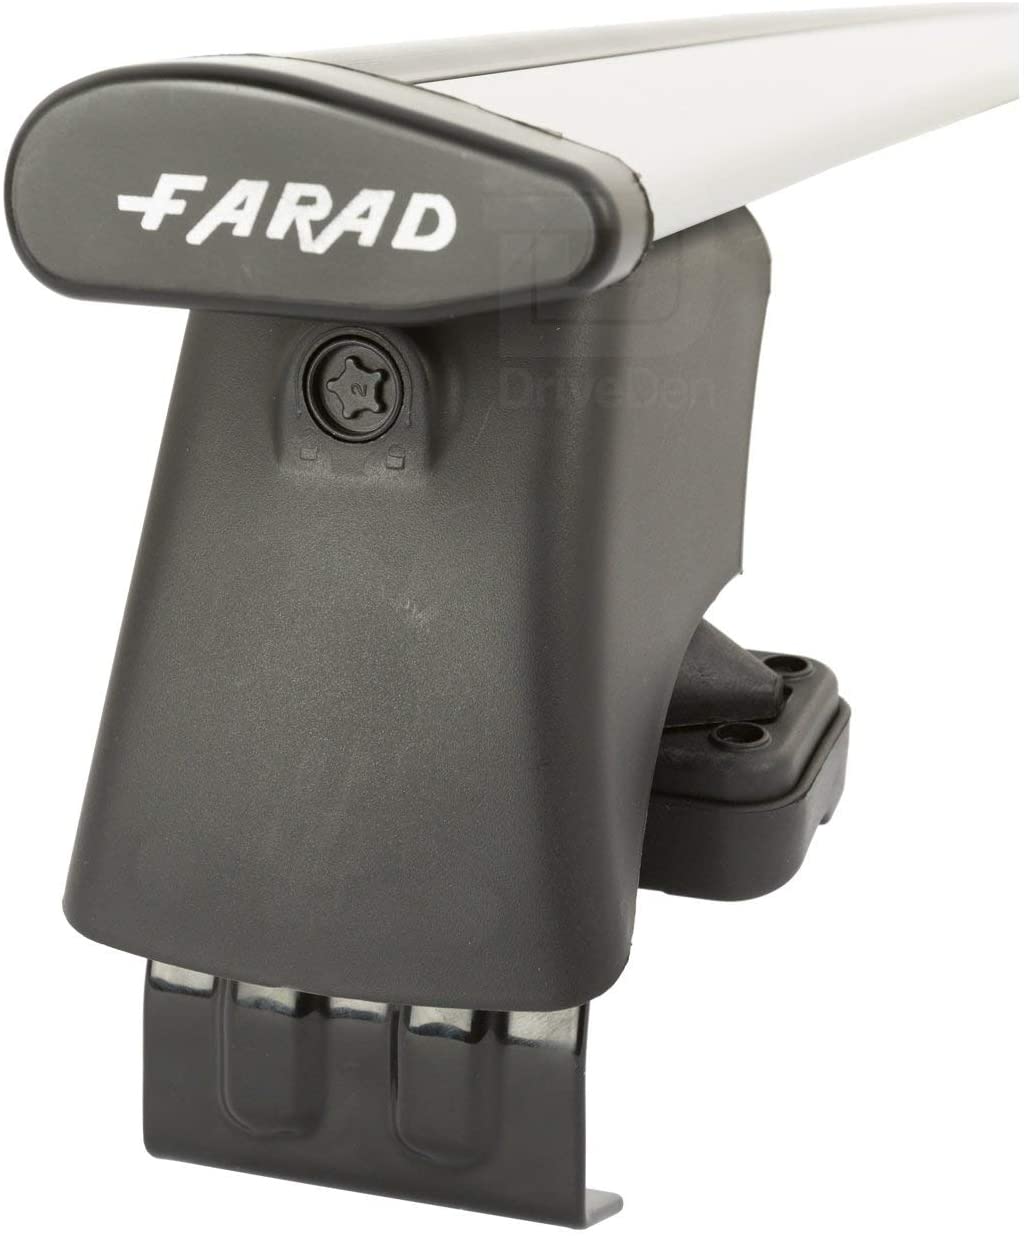 FARAD-Kit H2 per barre portatutto - Citroen C1 2005> (senza corrimano)